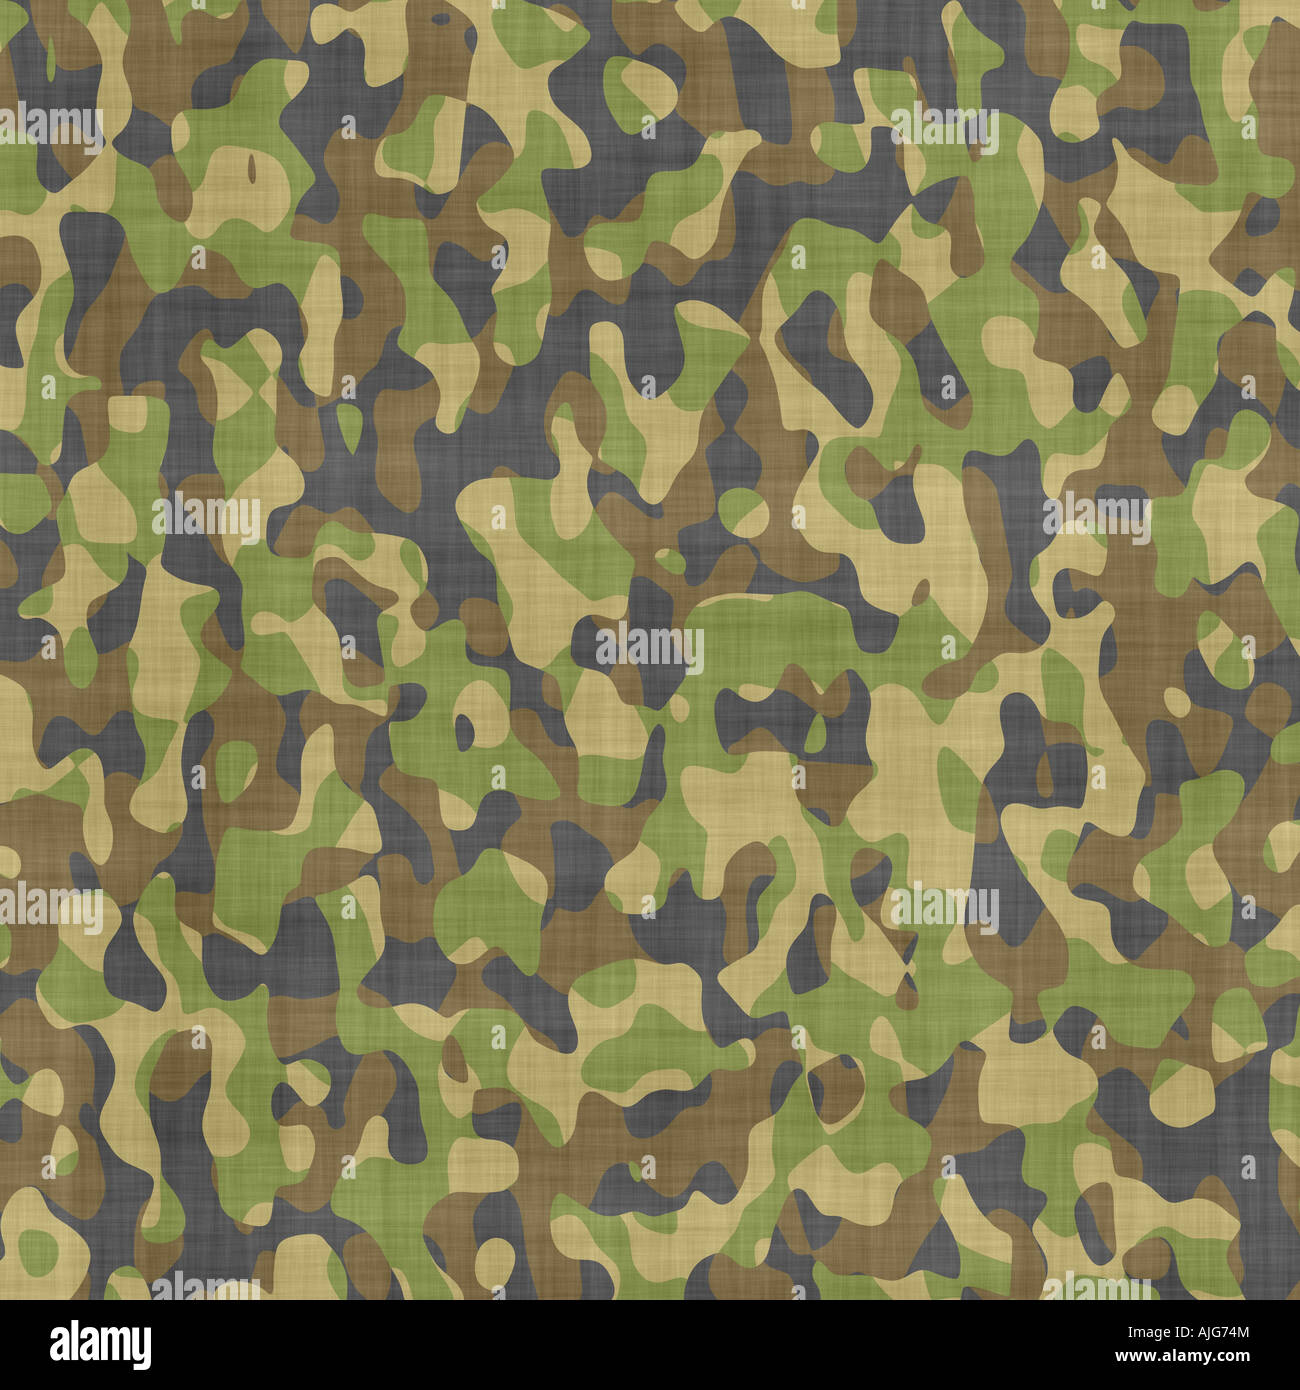 Grand Fond d'une image de matériau de camouflage militaire Banque D'Images